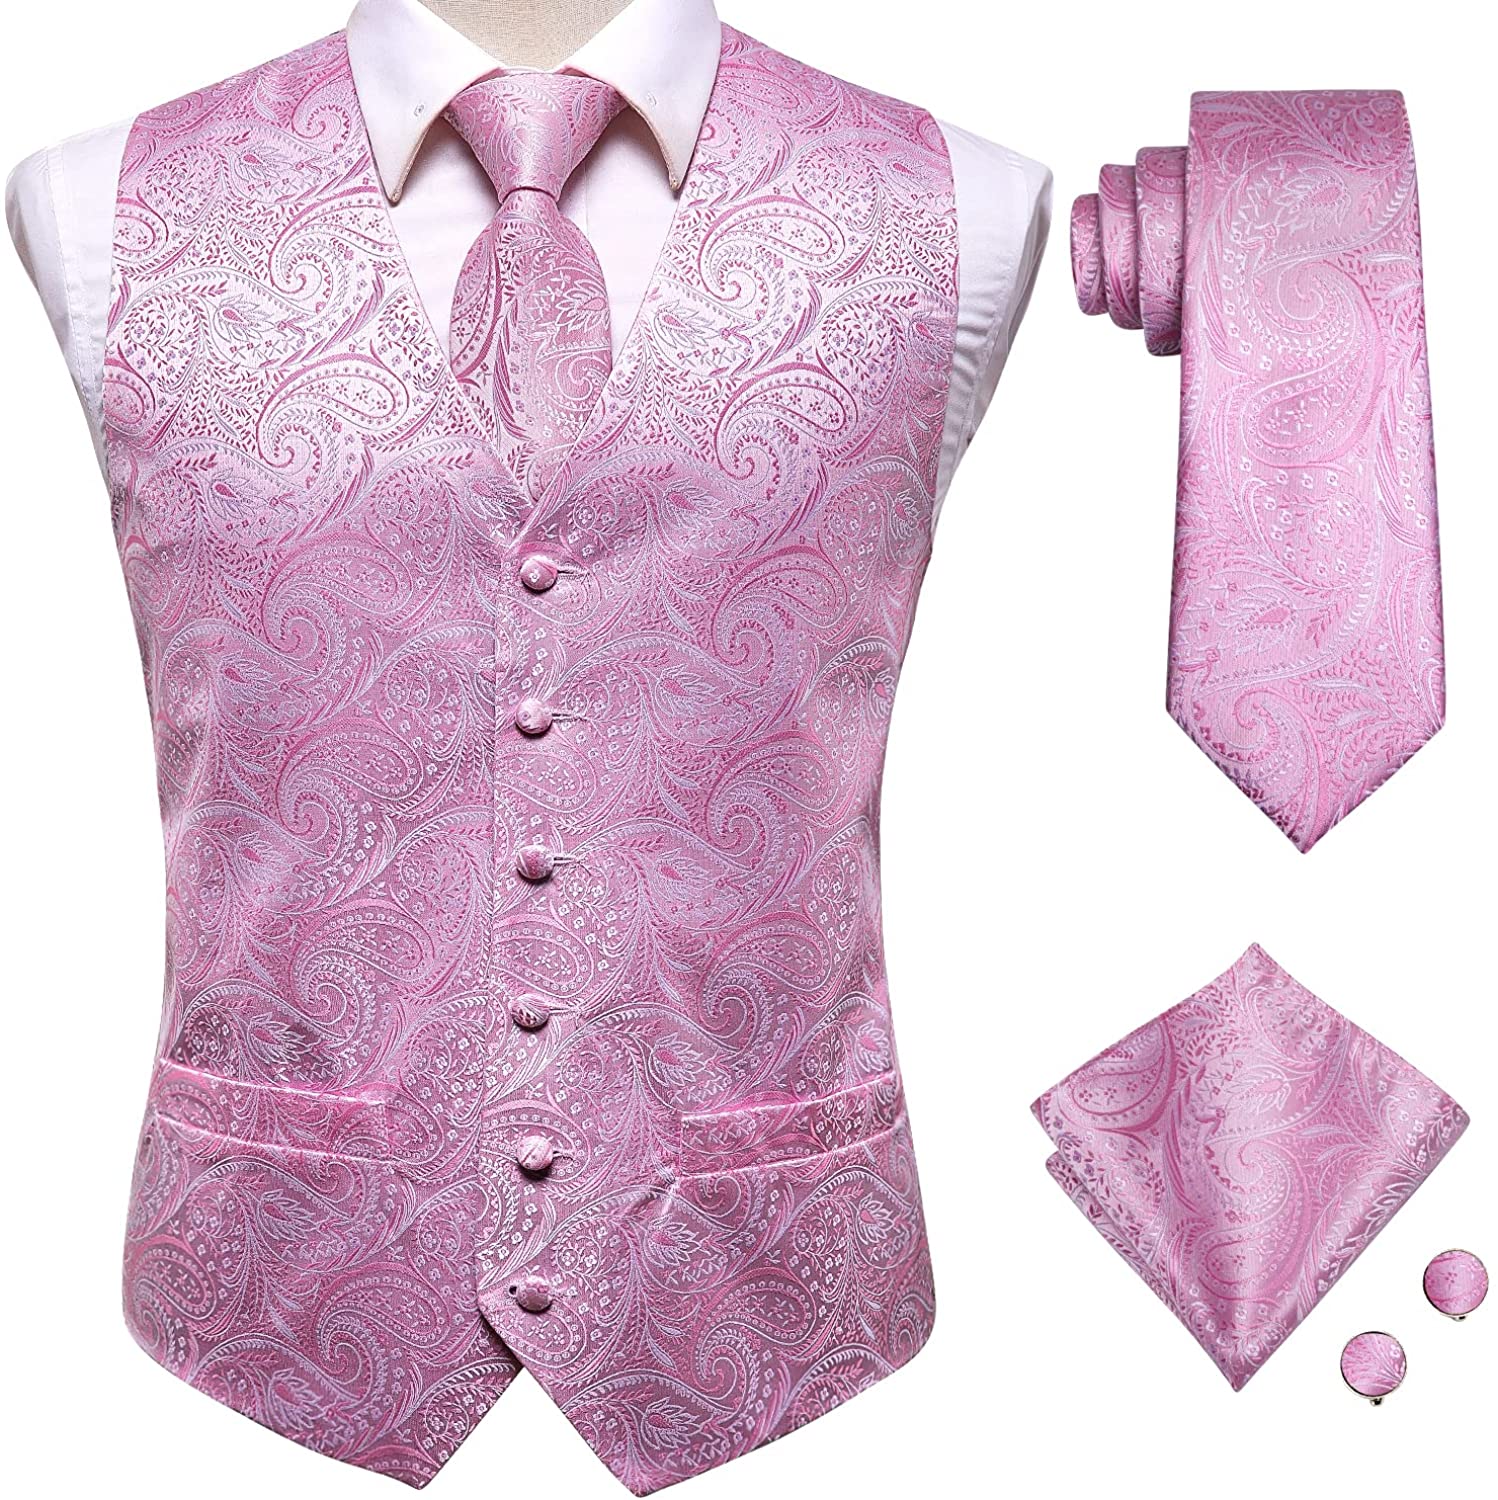 Hi-Tie Men's 4pc Waistcoat Vest Necktie Pocket Square Cufflinks Set For Suit or Tuxedo More Color for Choose 